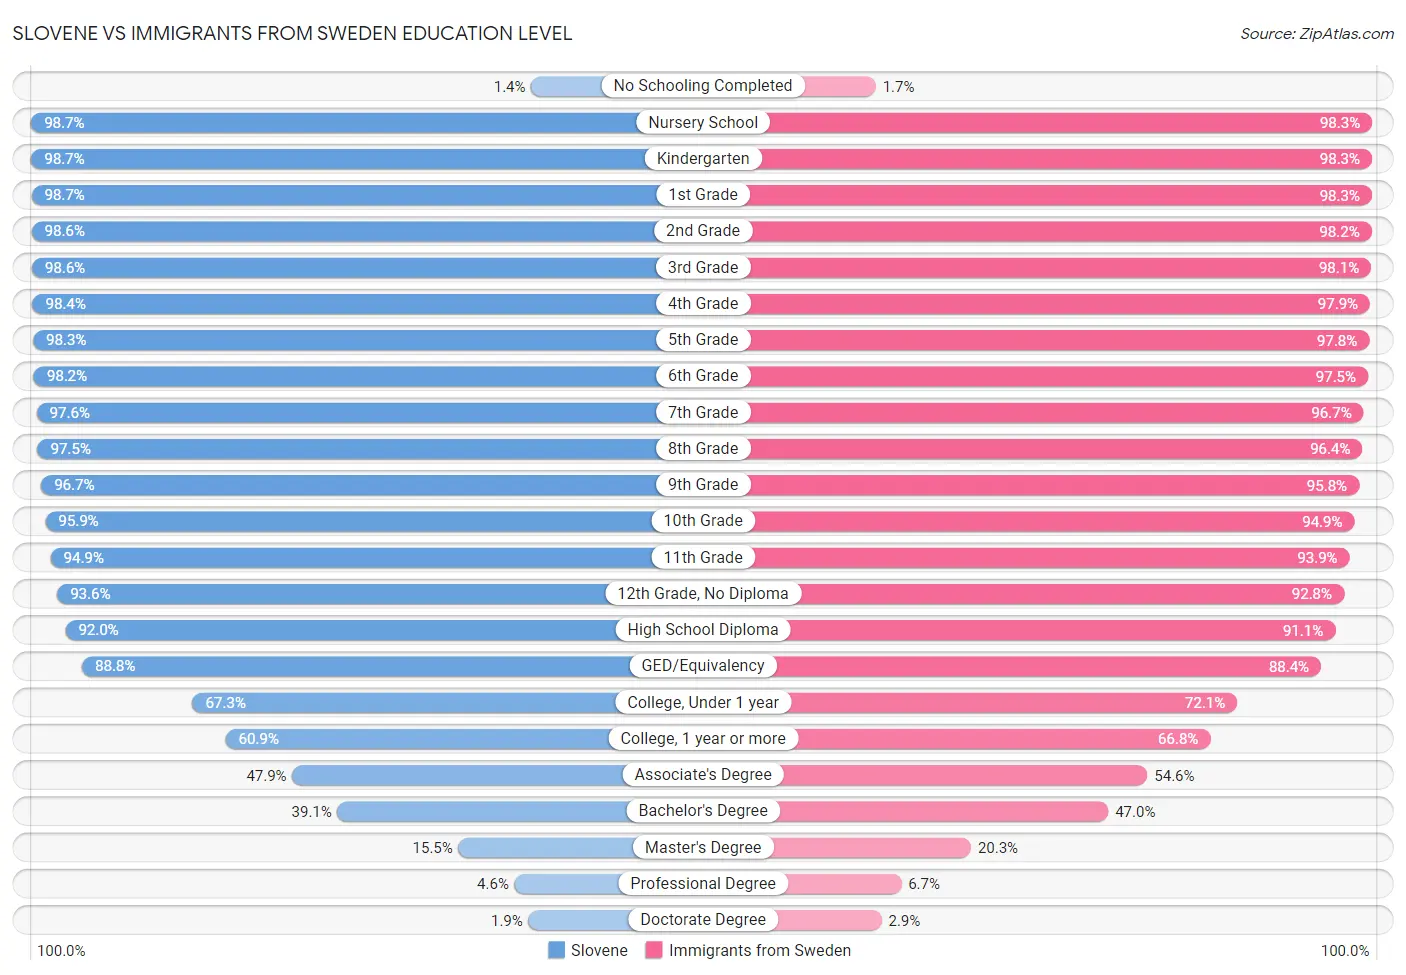 Slovene vs Immigrants from Sweden Education Level